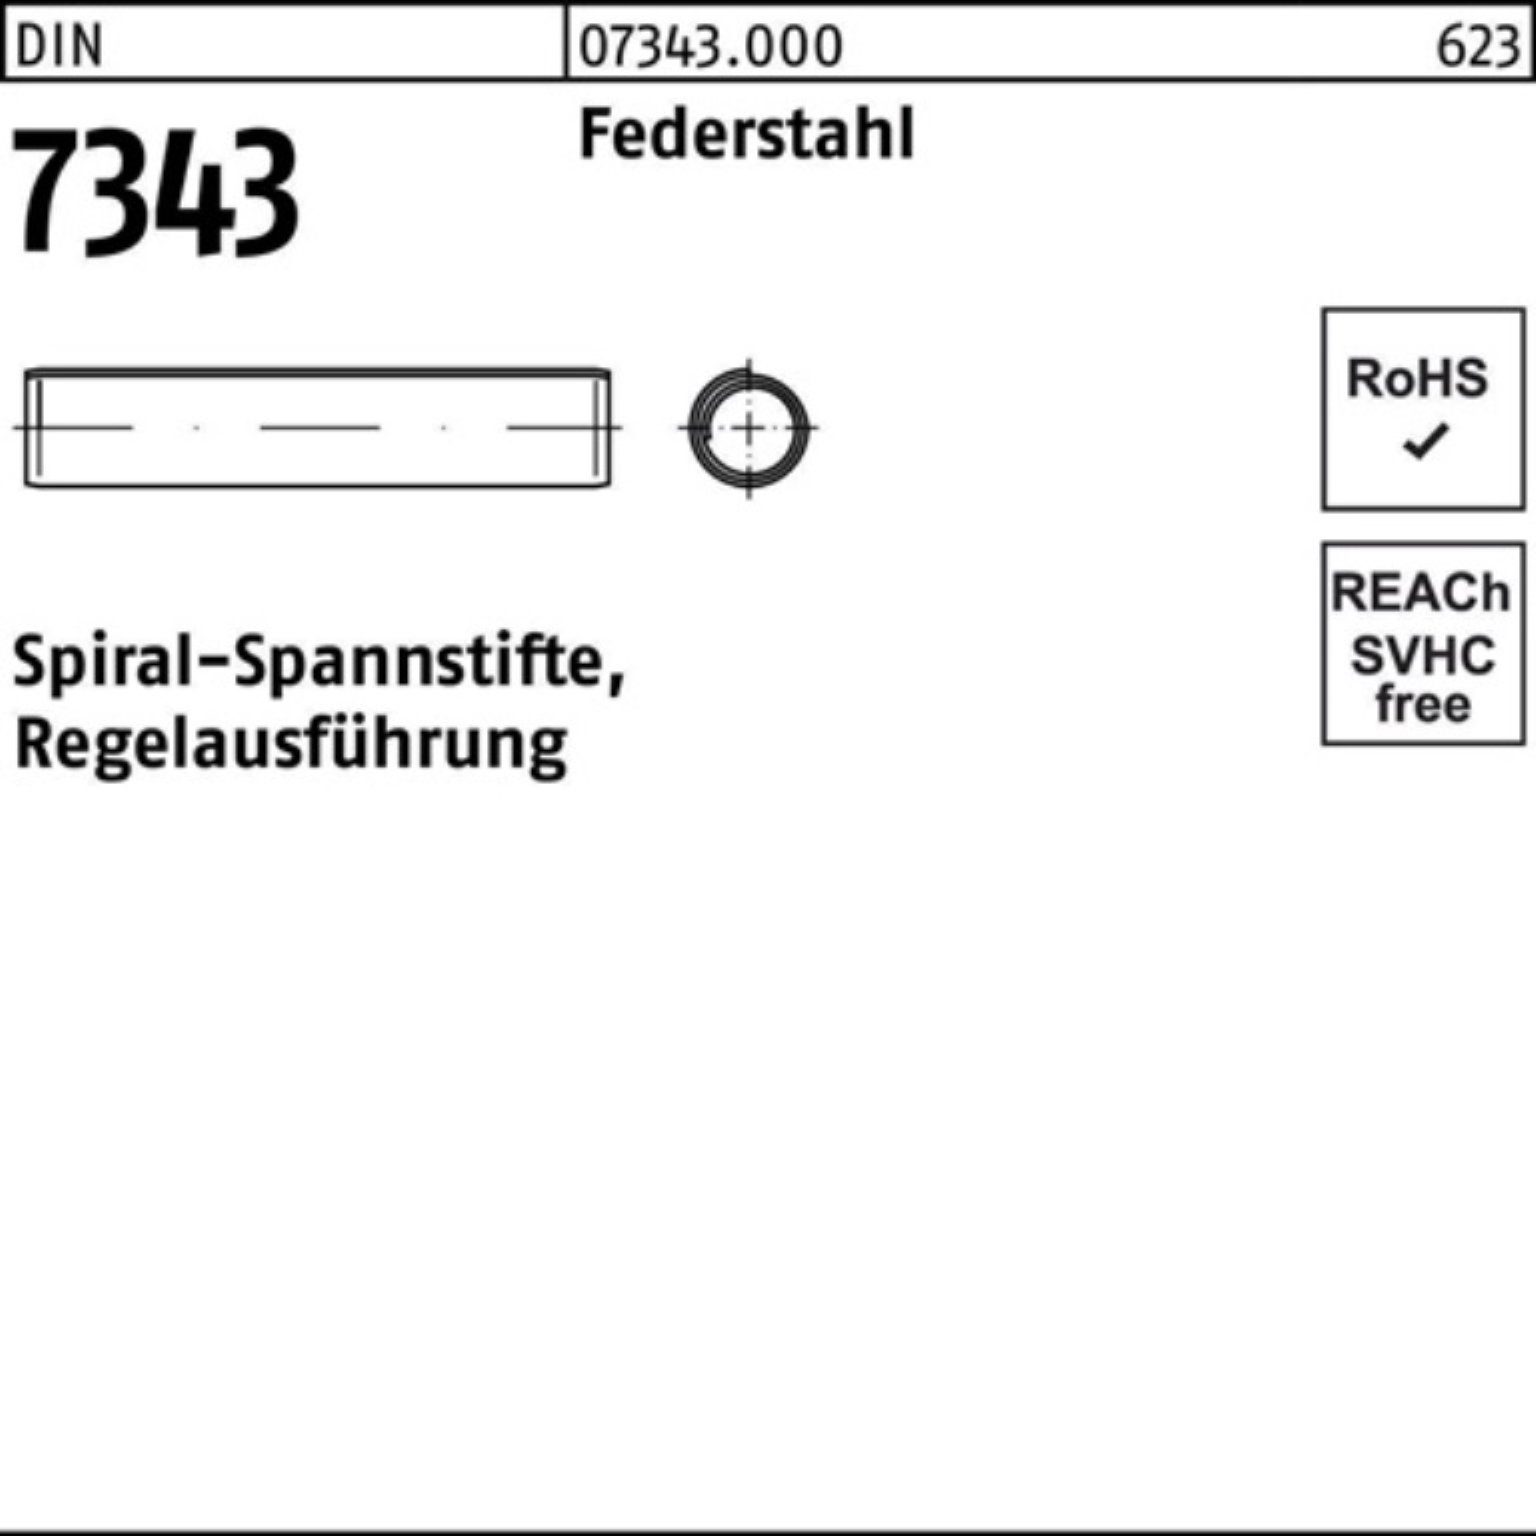 Reyher Spannstift 2,5x 7343/ISO Spiralspannstift 1000er DIN Rege 12 Pack Federstahl 8750